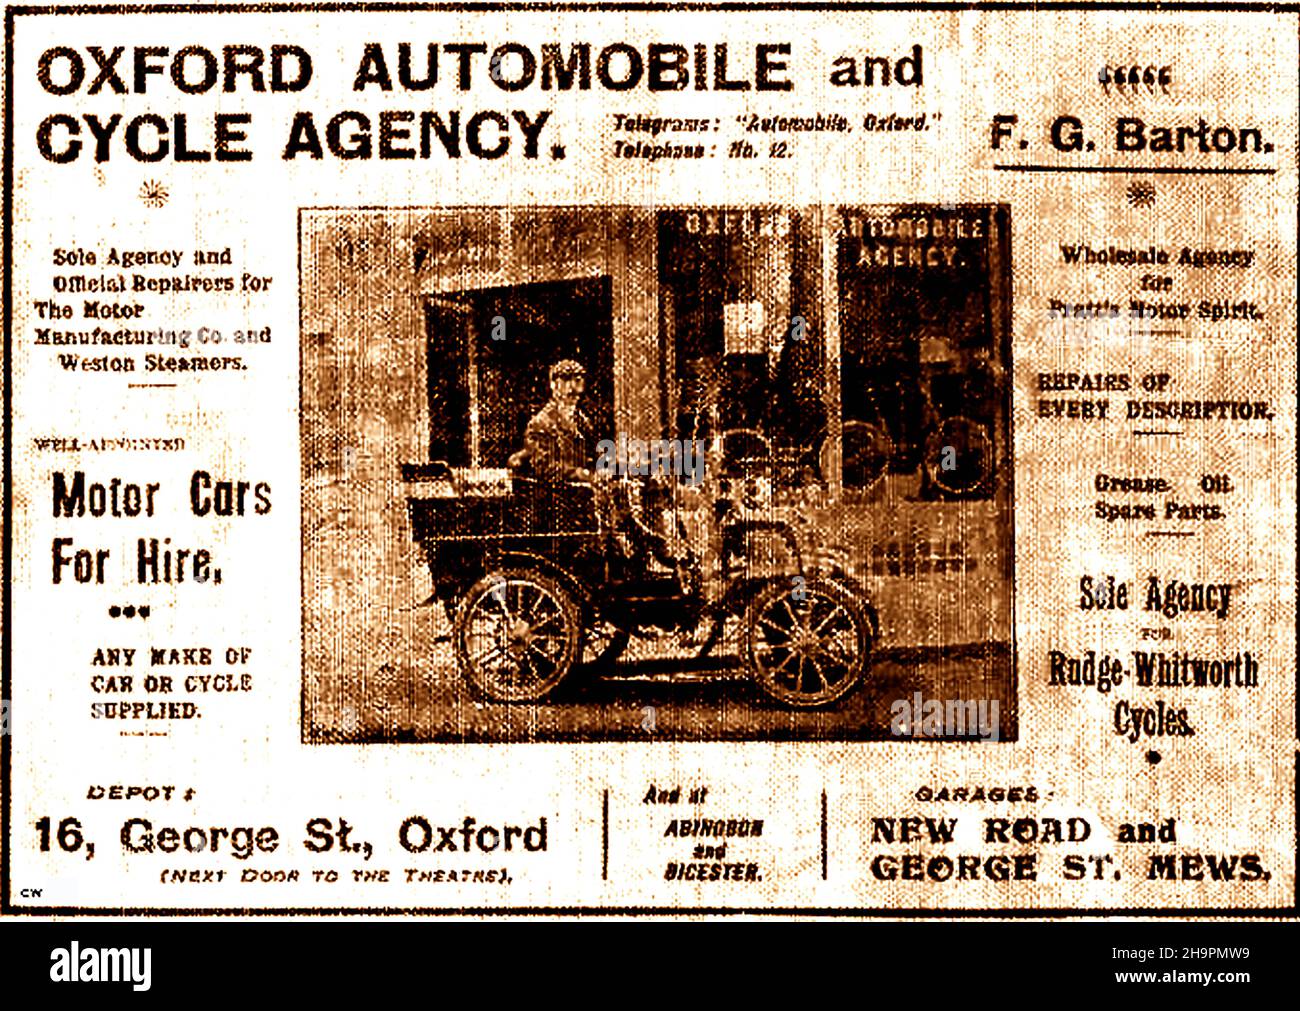 Un vieux journal publicitaire pour l'agence automobile et cycle d'Oxford, Angleterre Banque D'Images